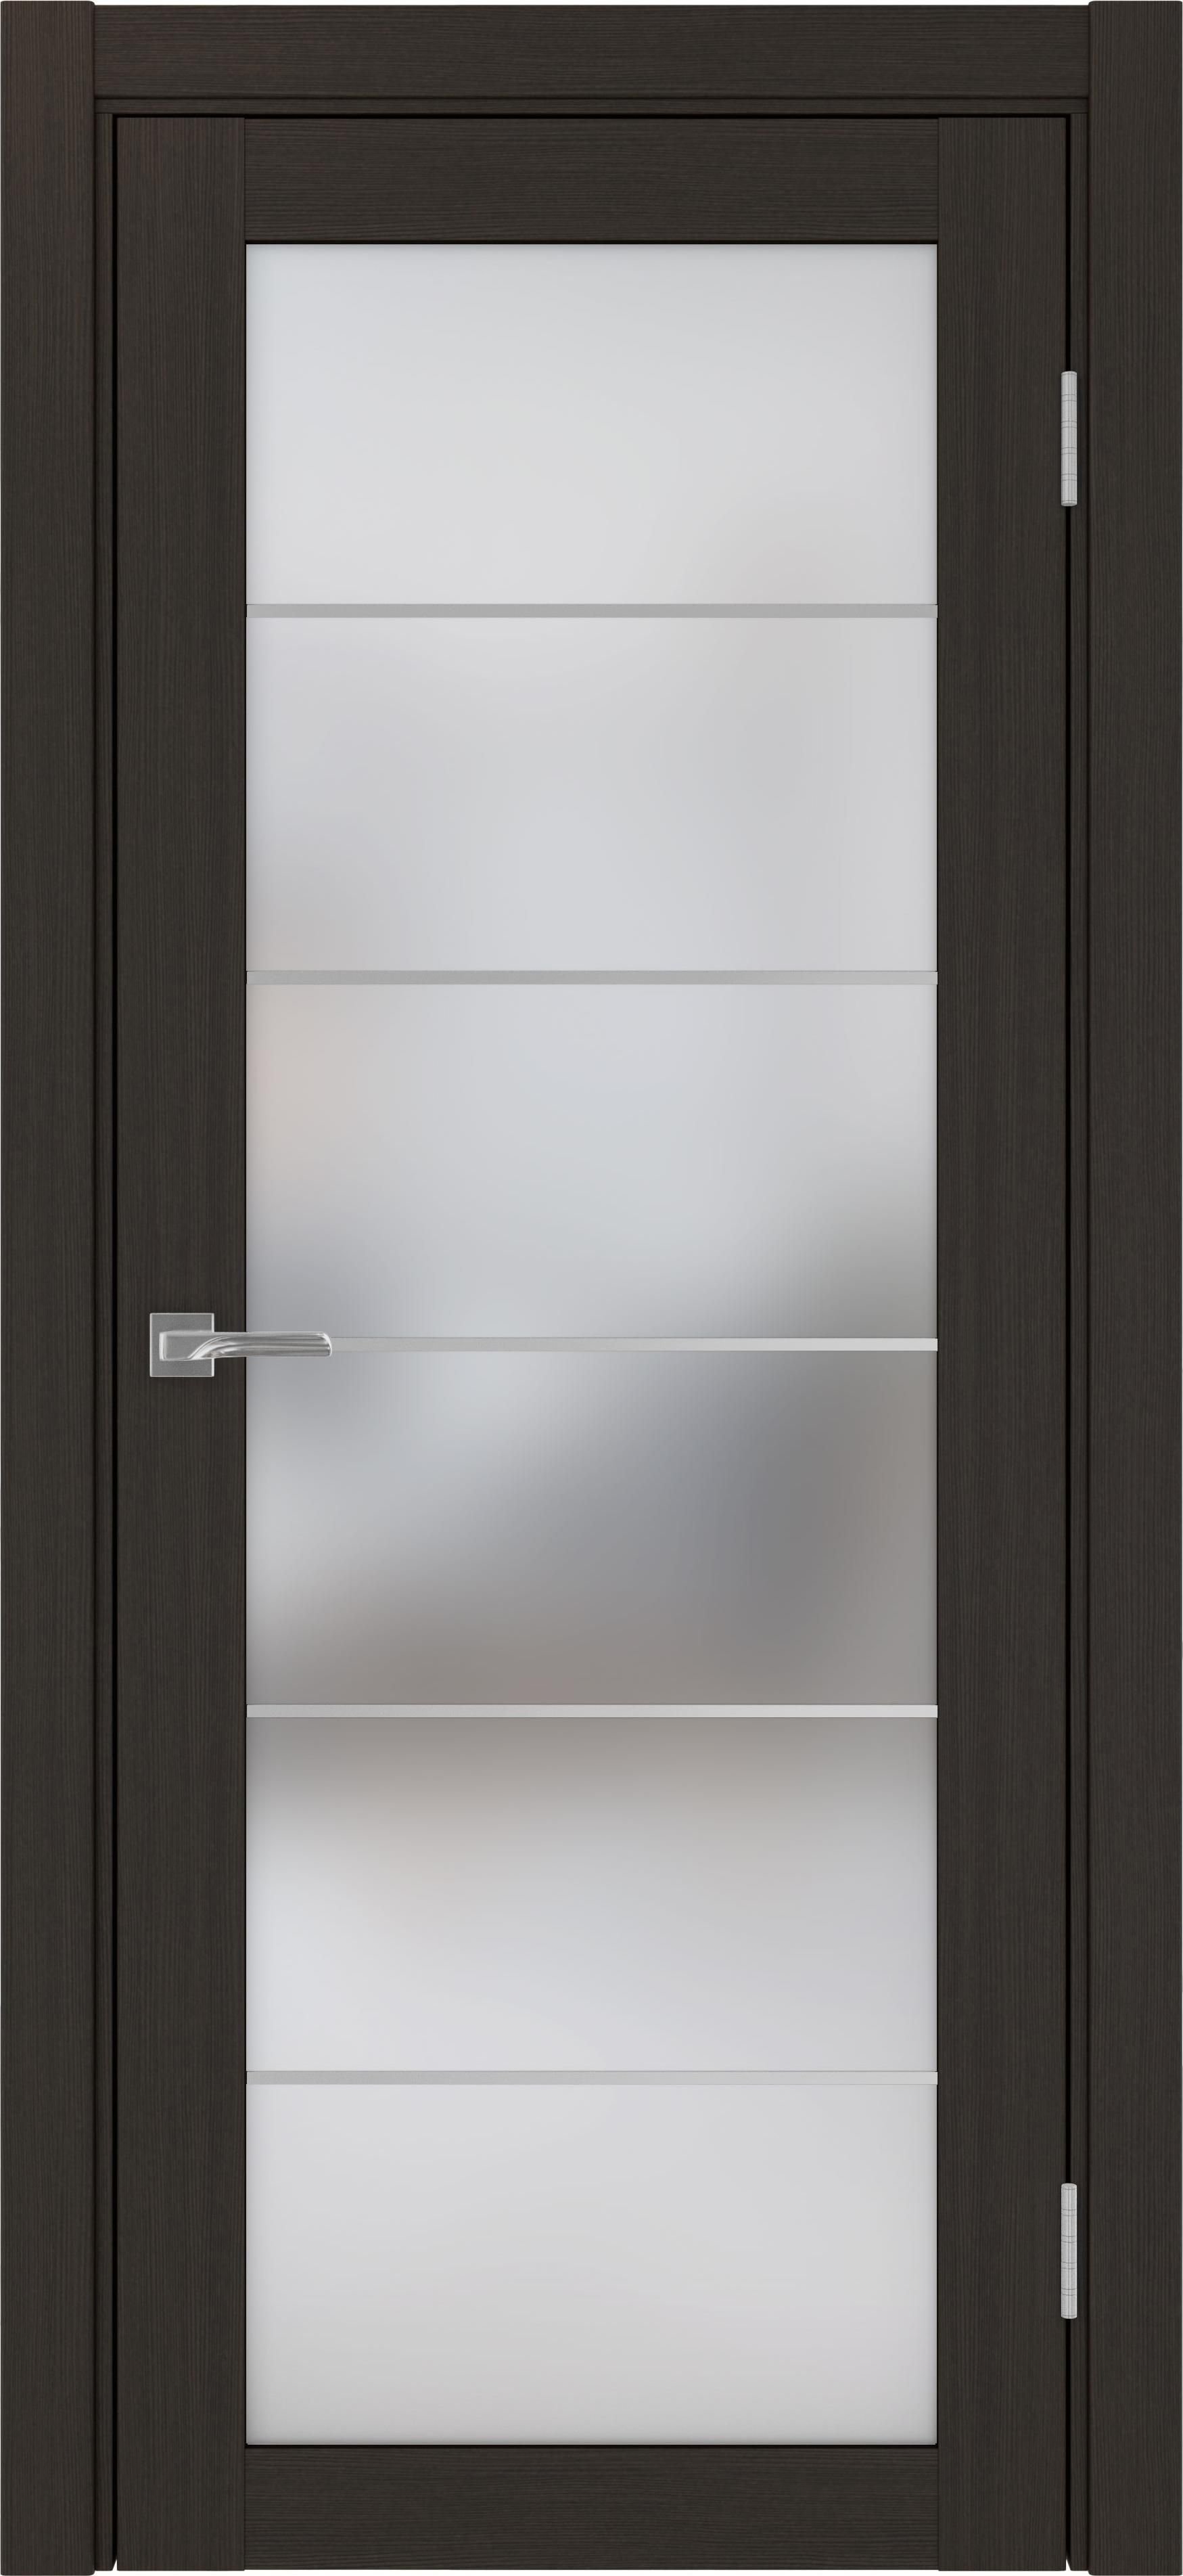 Межкомнатная дверь «Турин 501.2 АСС Венге» стекло сатин с алюминиевыми молдингами